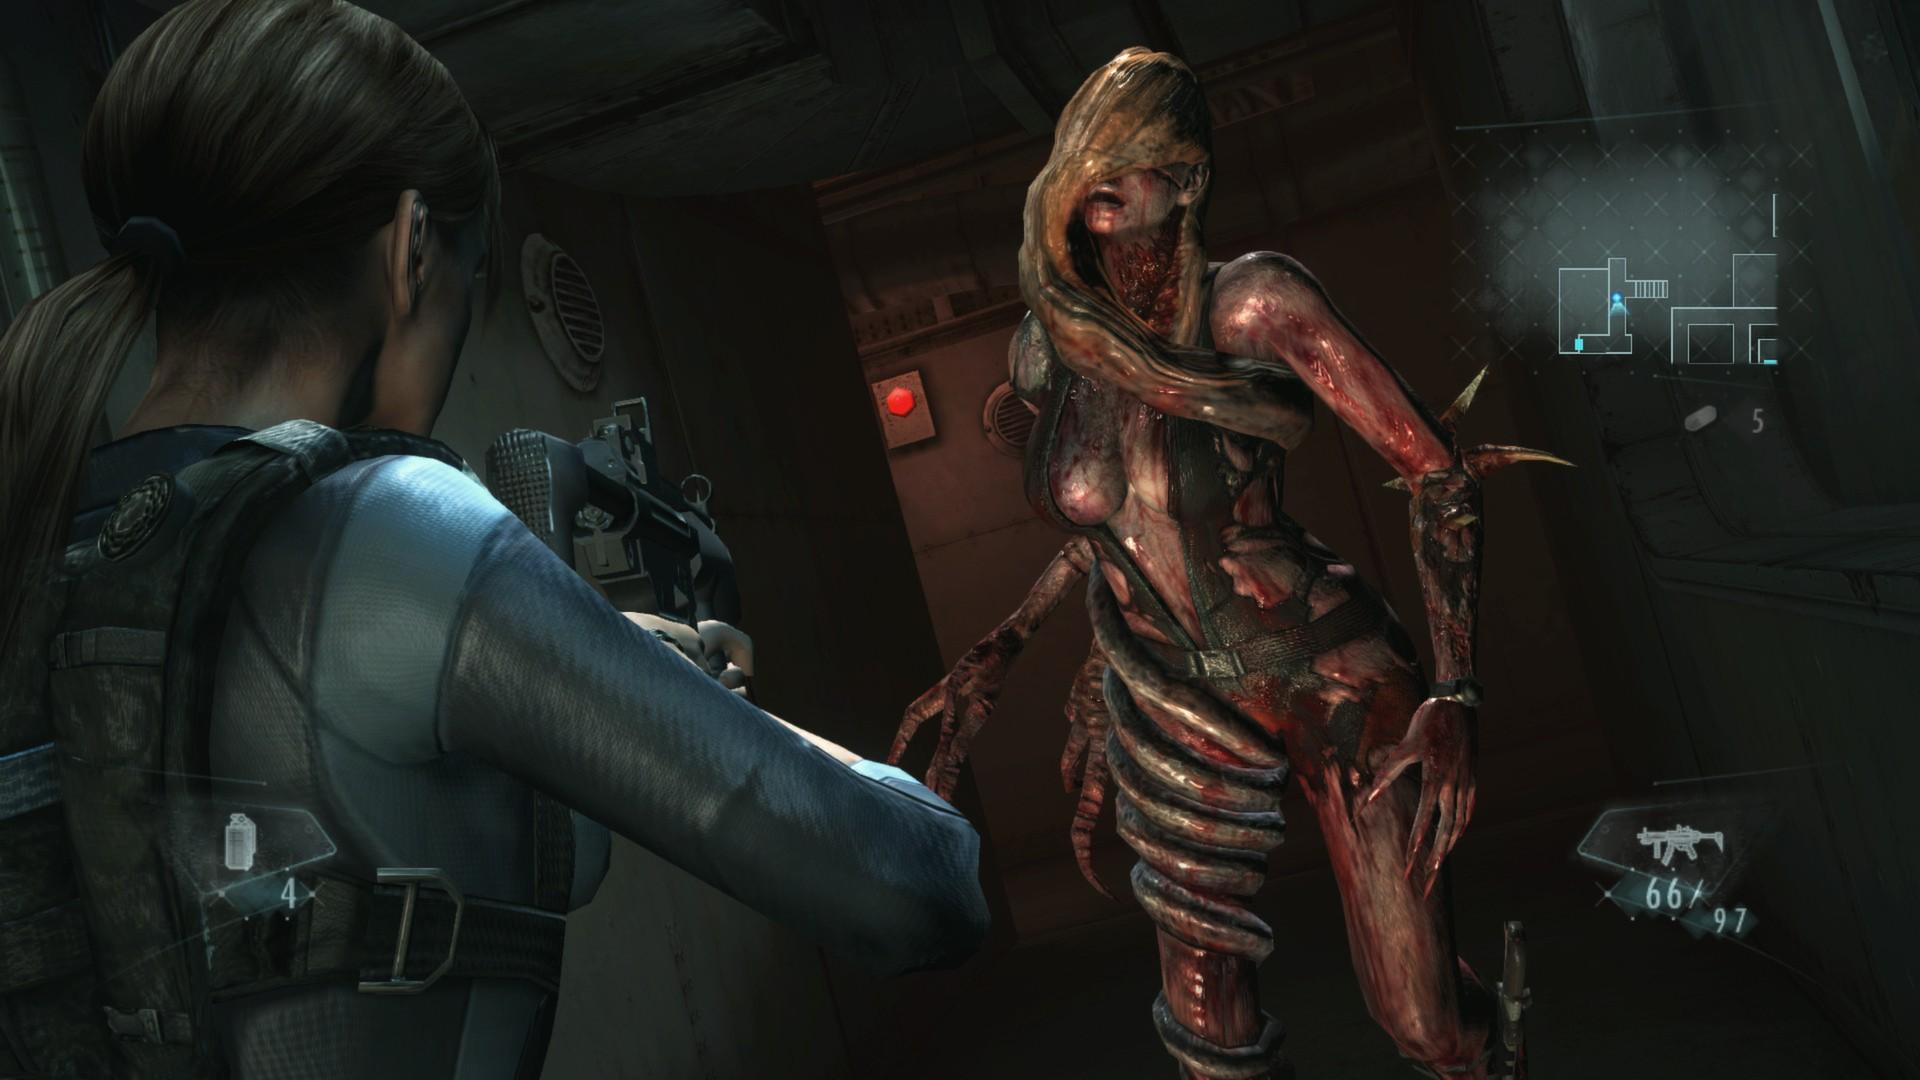 Screenshot №14 from game Resident Evil Revelations